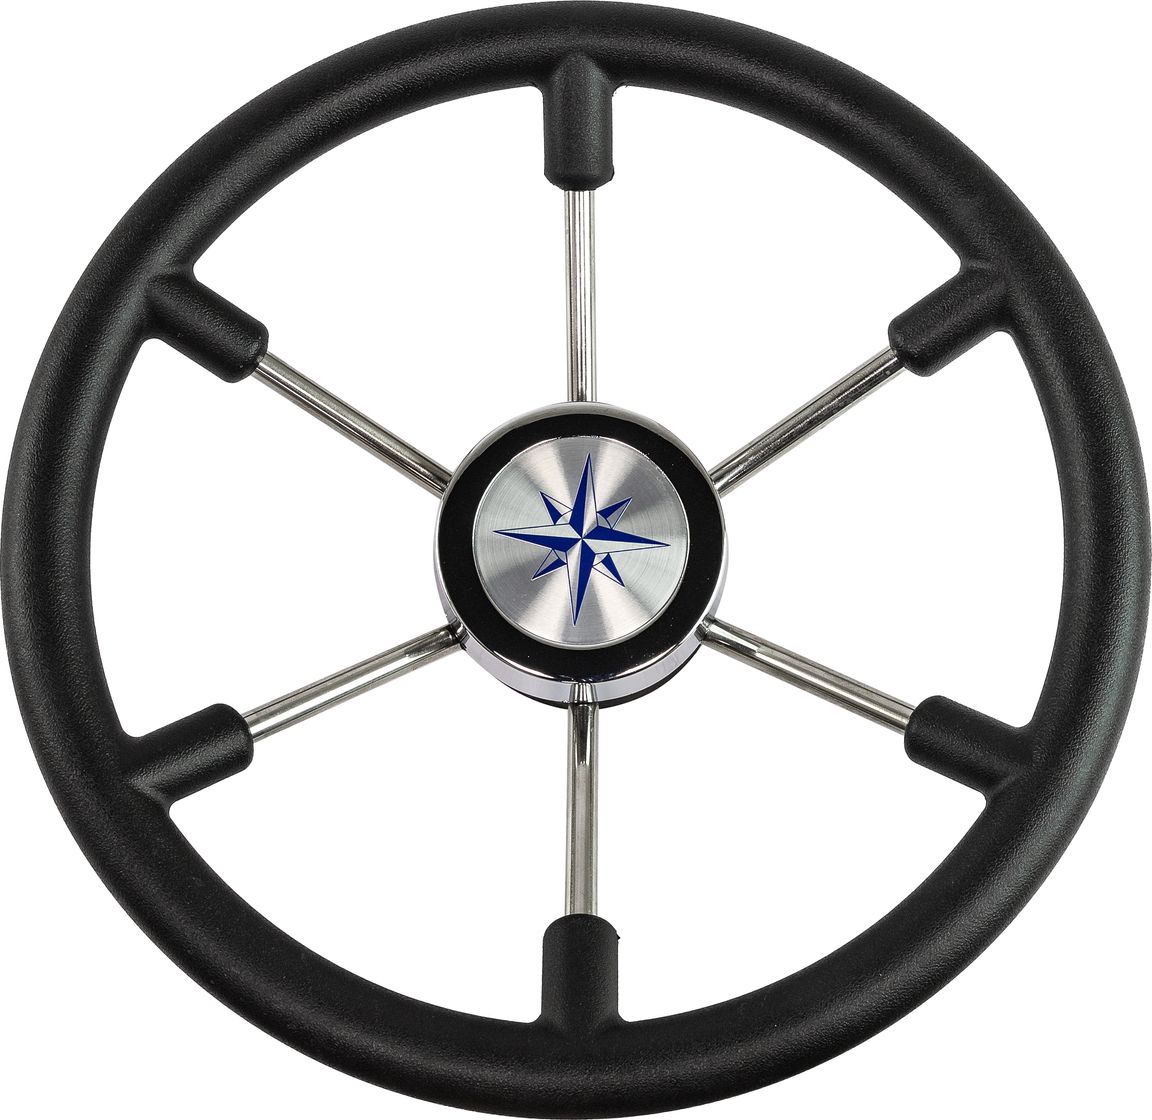 Рулевое колесо LEADER PLAST черный обод серебряные спицы д. 360 мм VN8360-01 рулевое колесо orion обод черносиний спицы серебряные д 355 мм vn960101 99